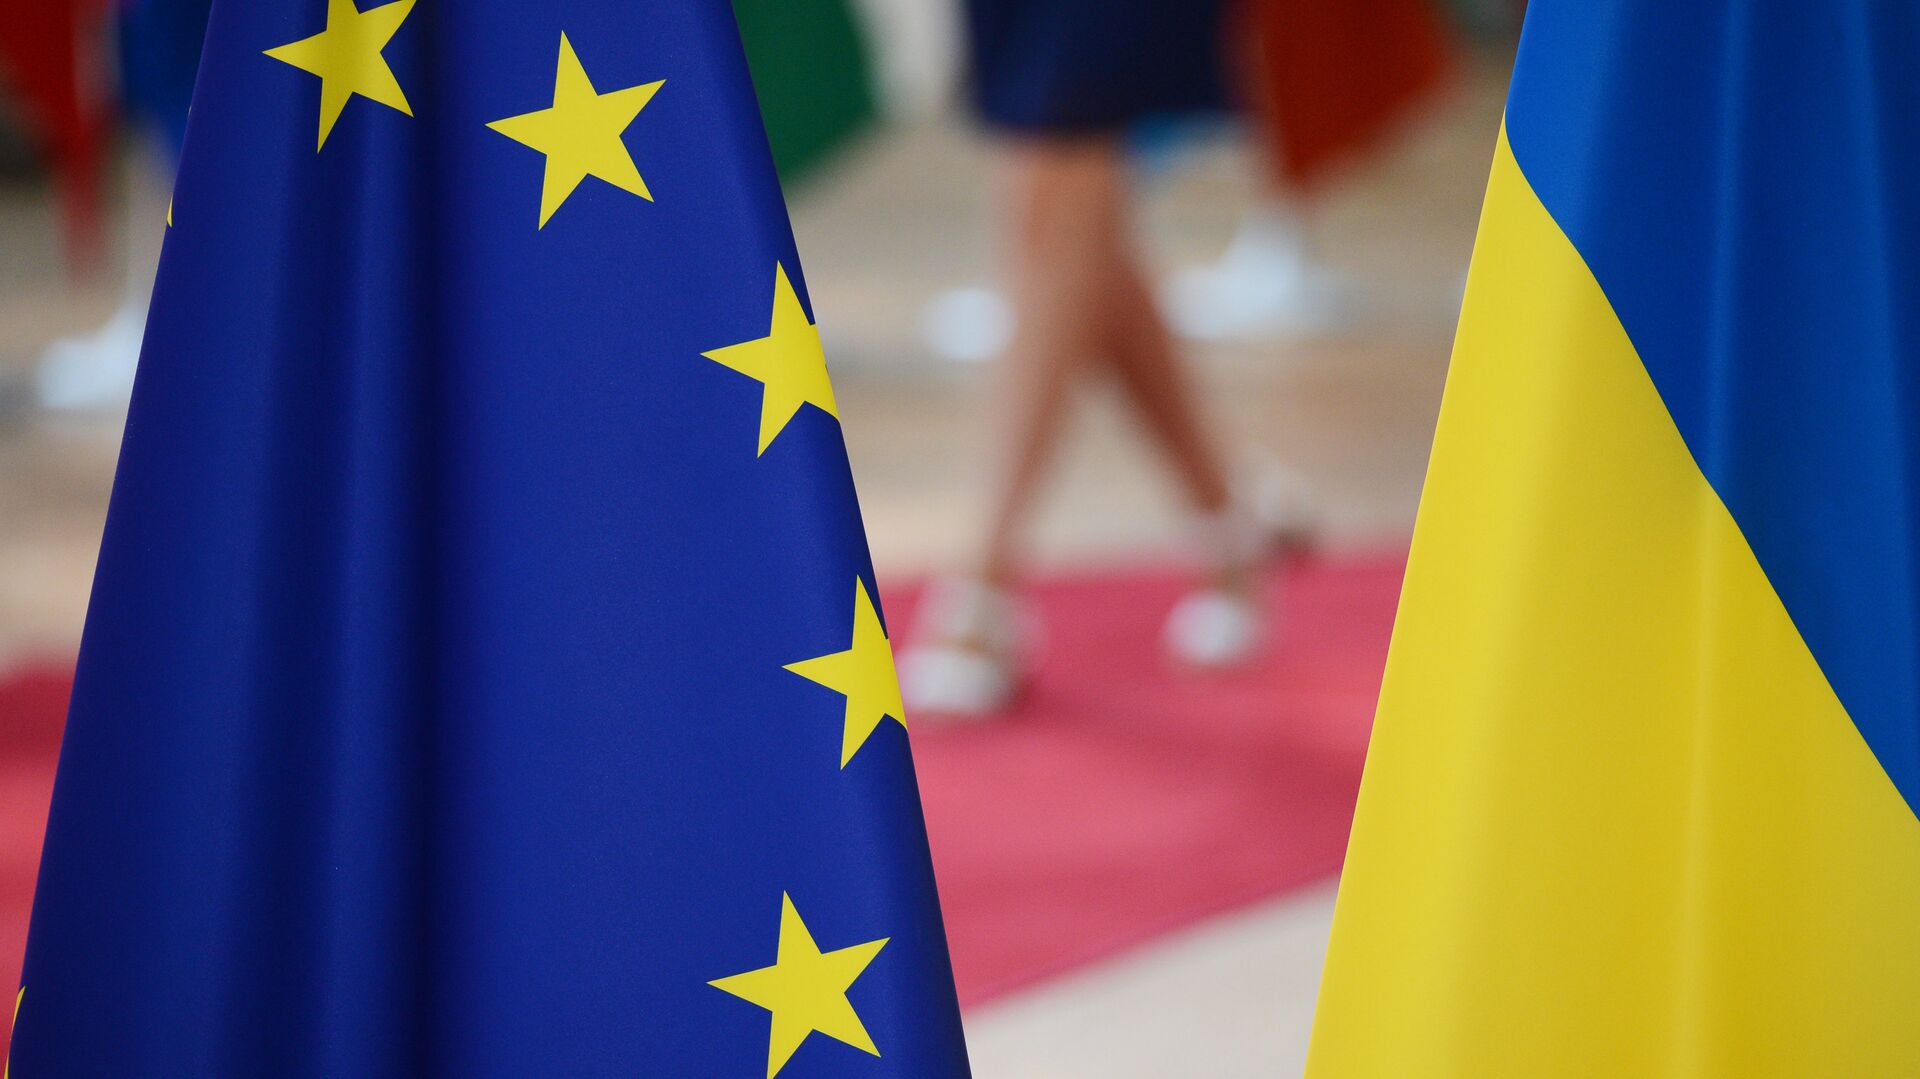 Украинцев возмутили слова президента Эстонии об их стране